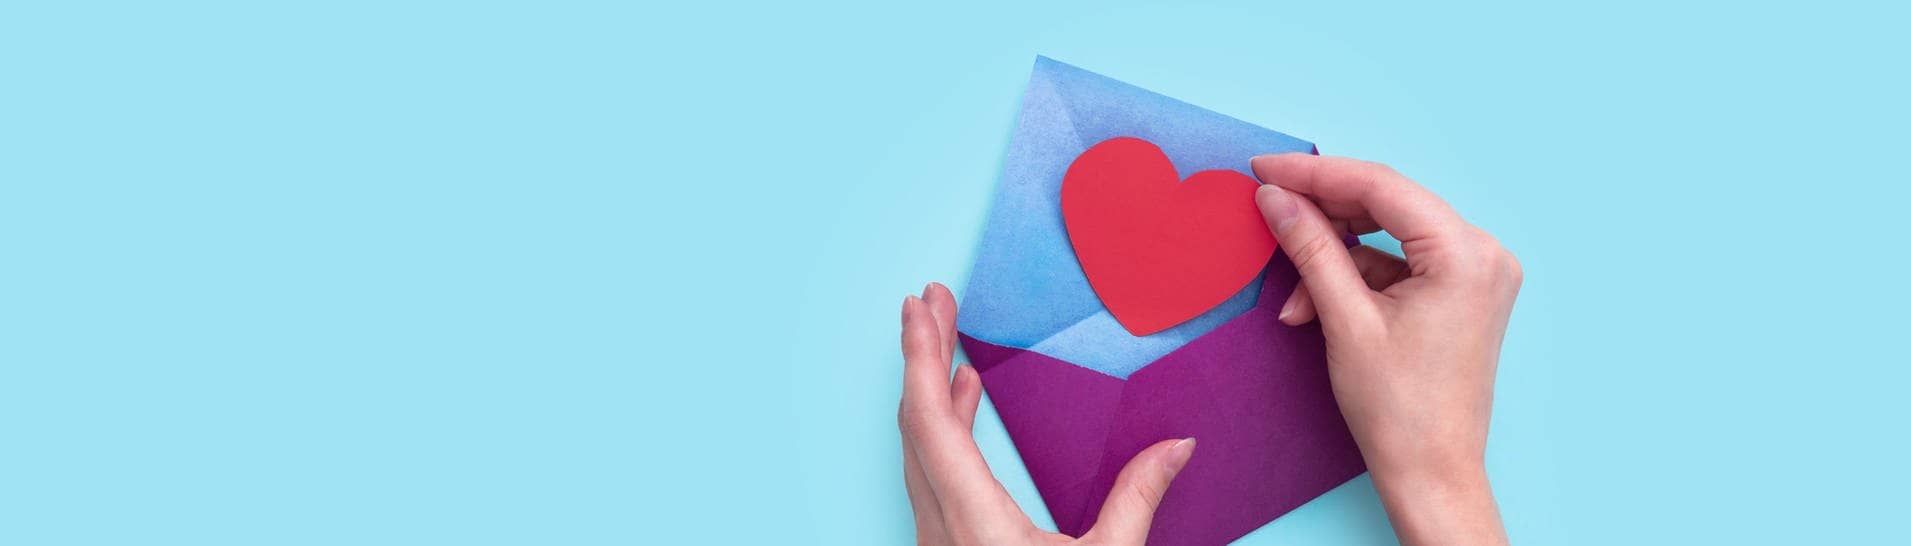 Eine Hand steckt ein rotes Papierherz in einen lila Umschlag.